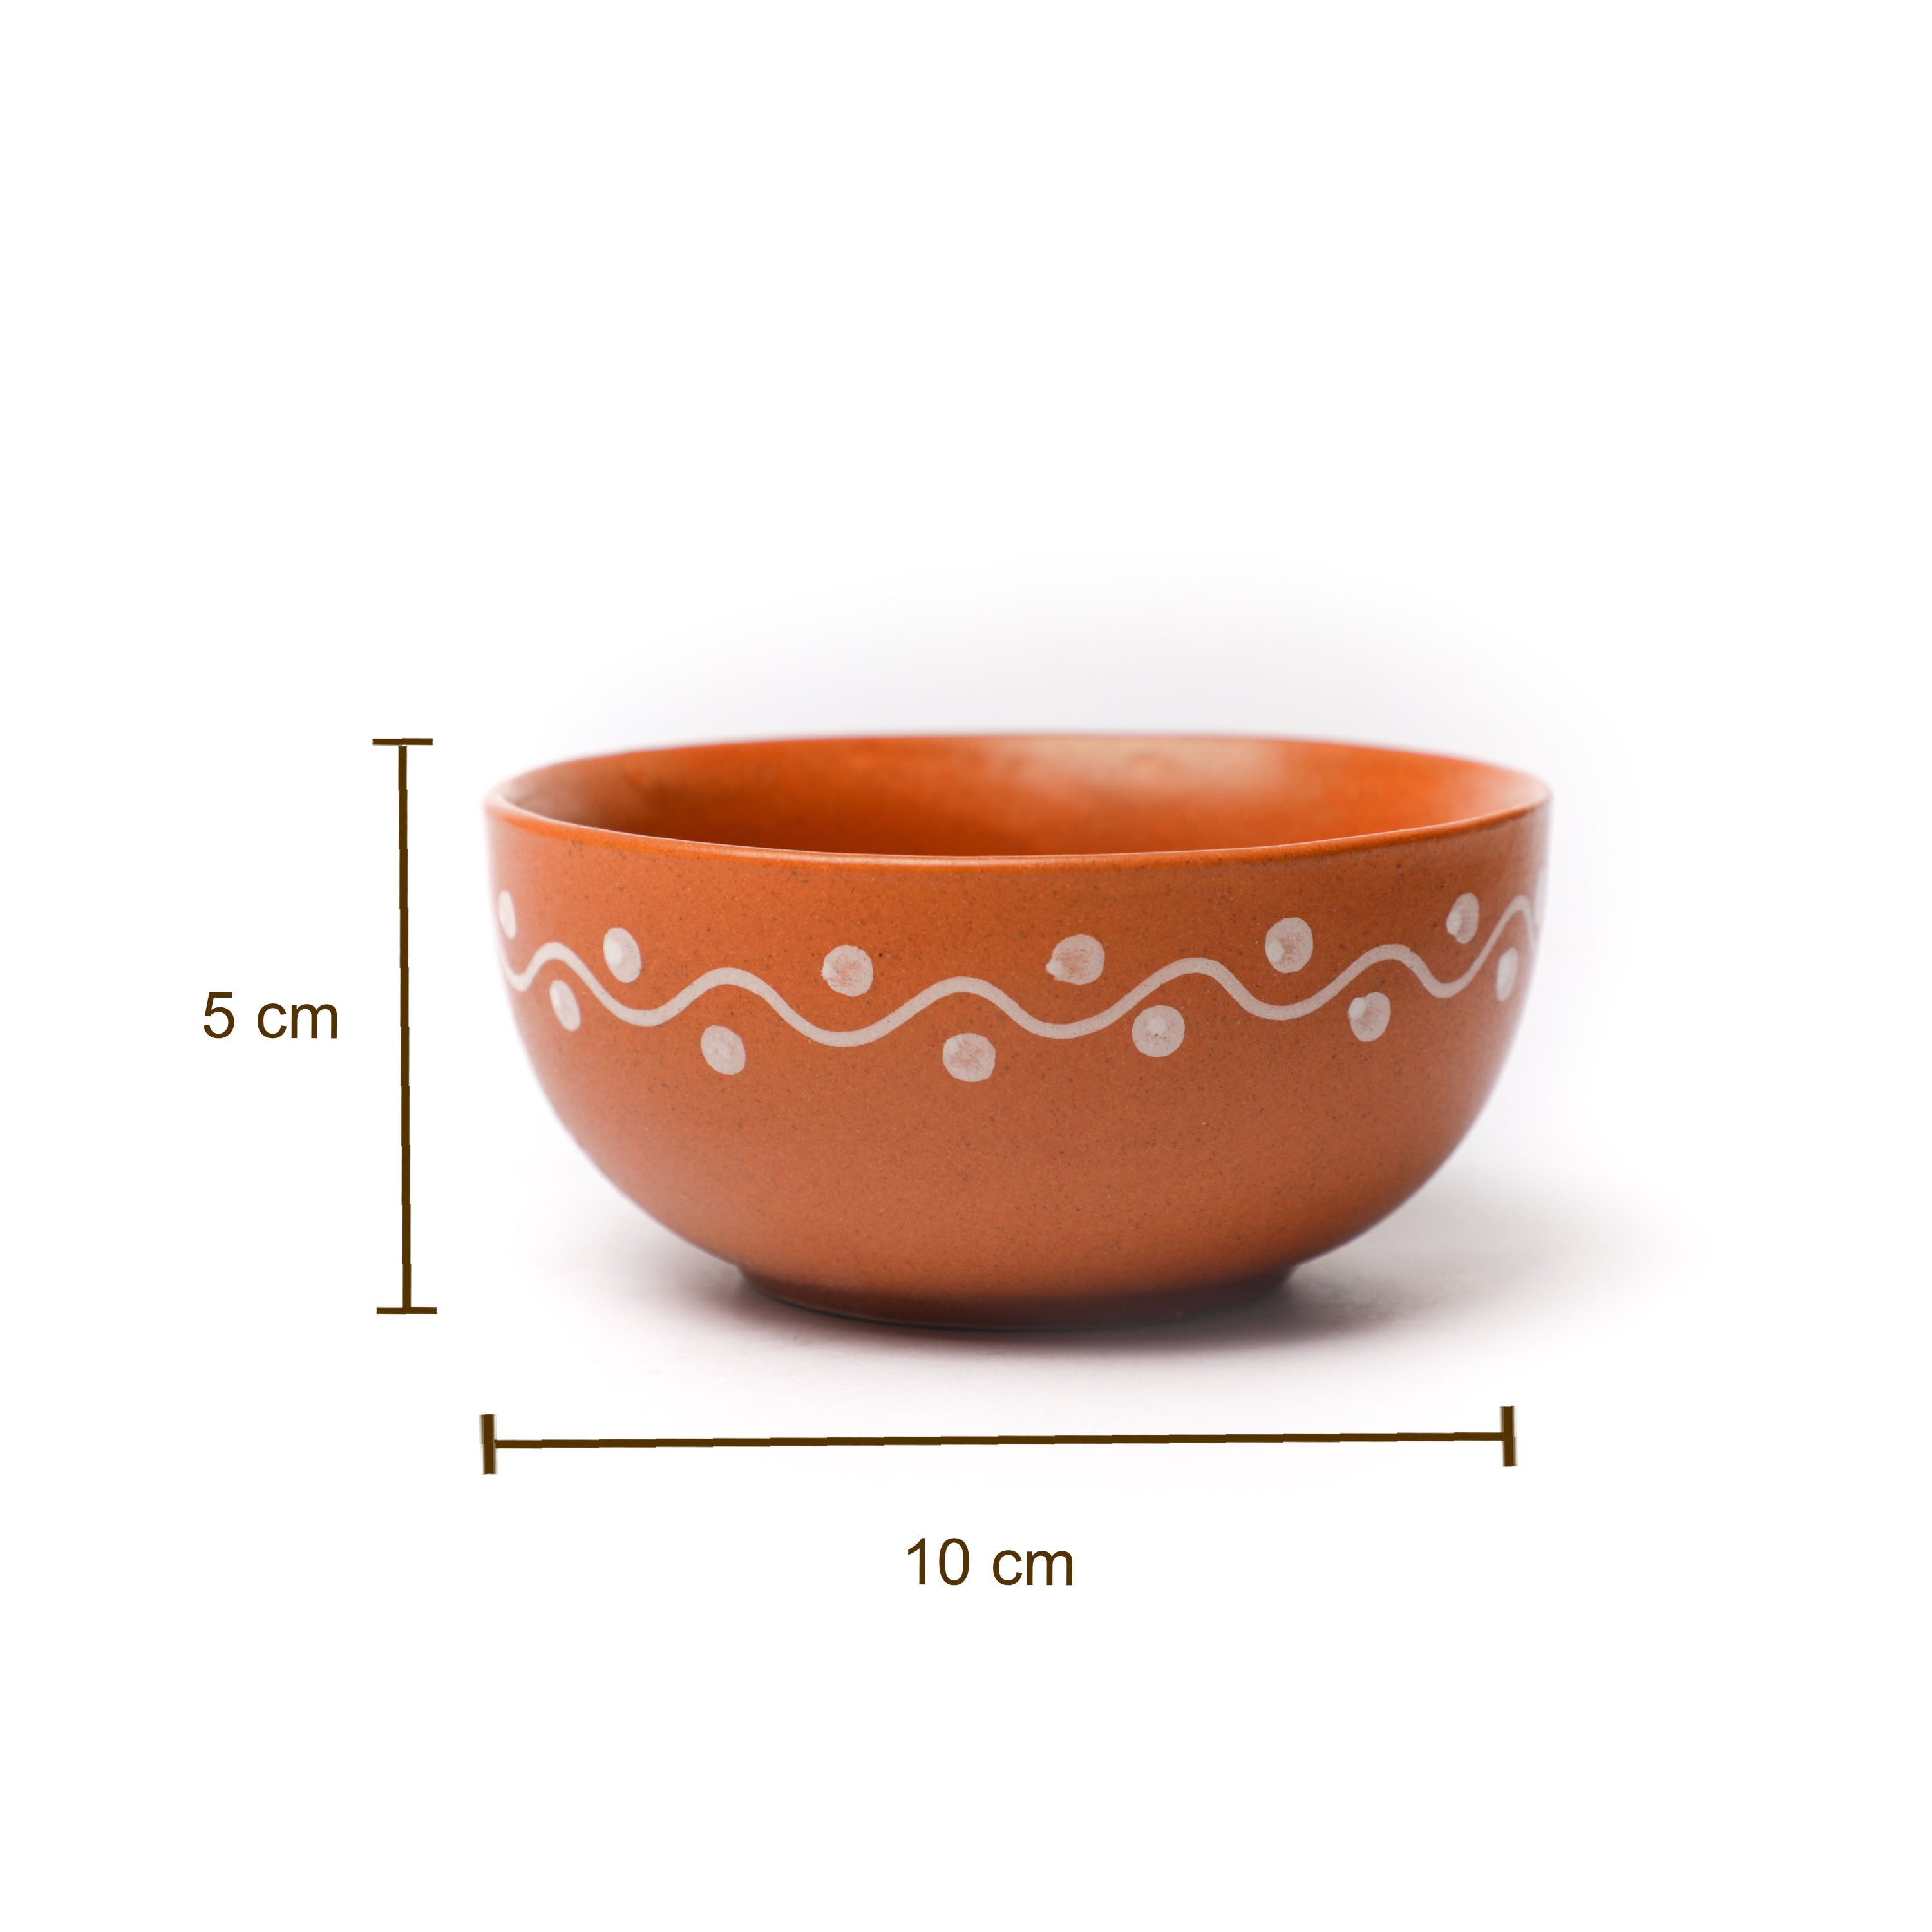 Brown color dessert bowls for regular home use